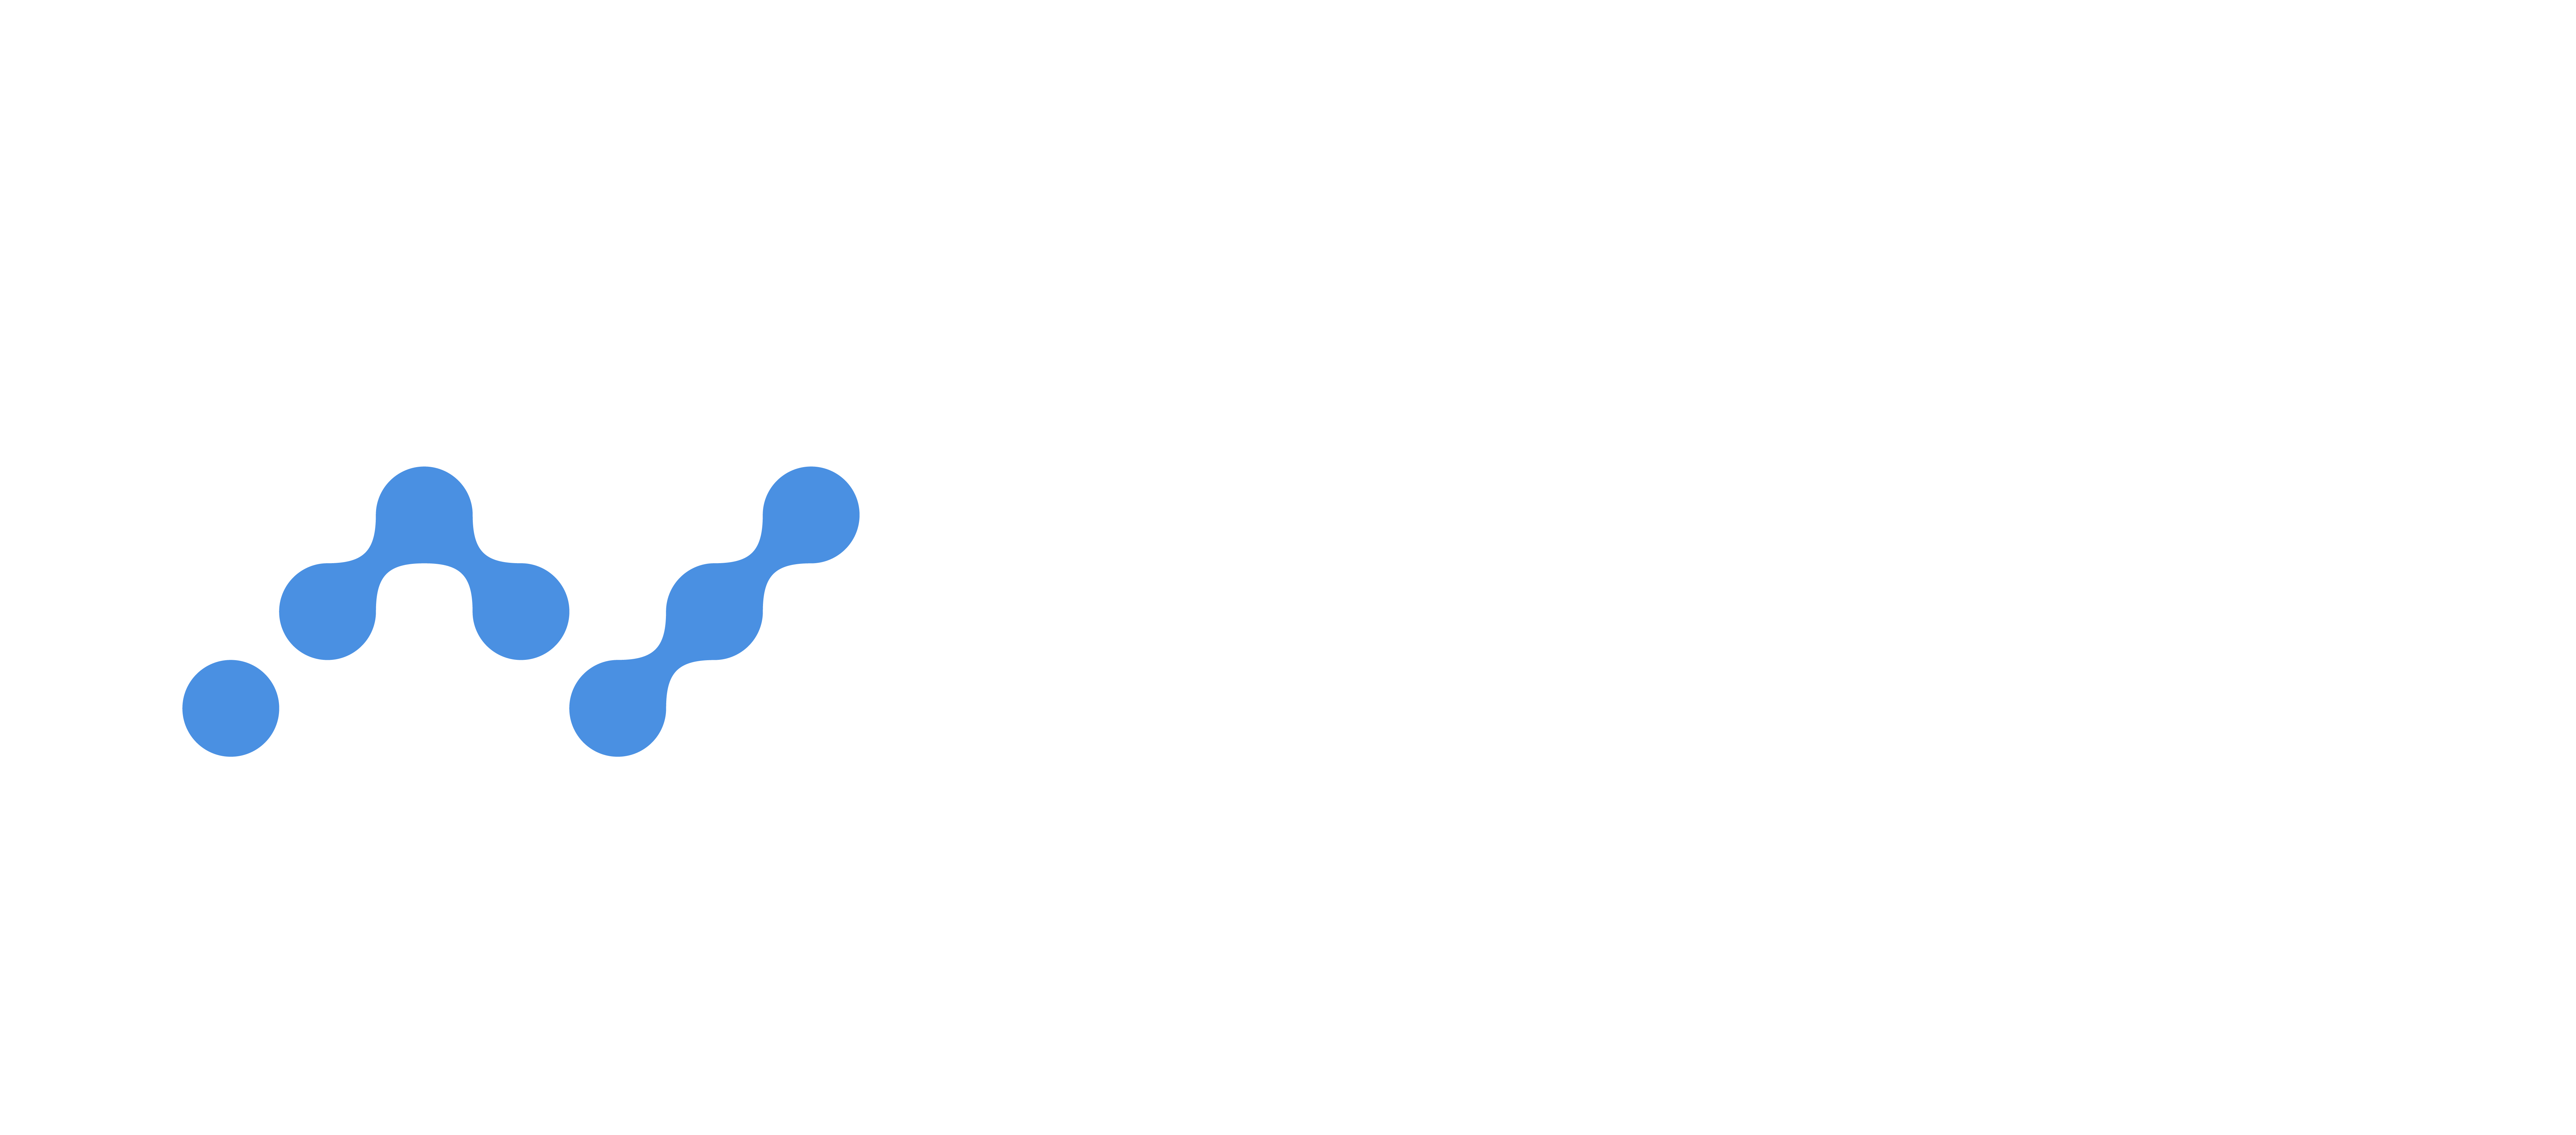 Nano